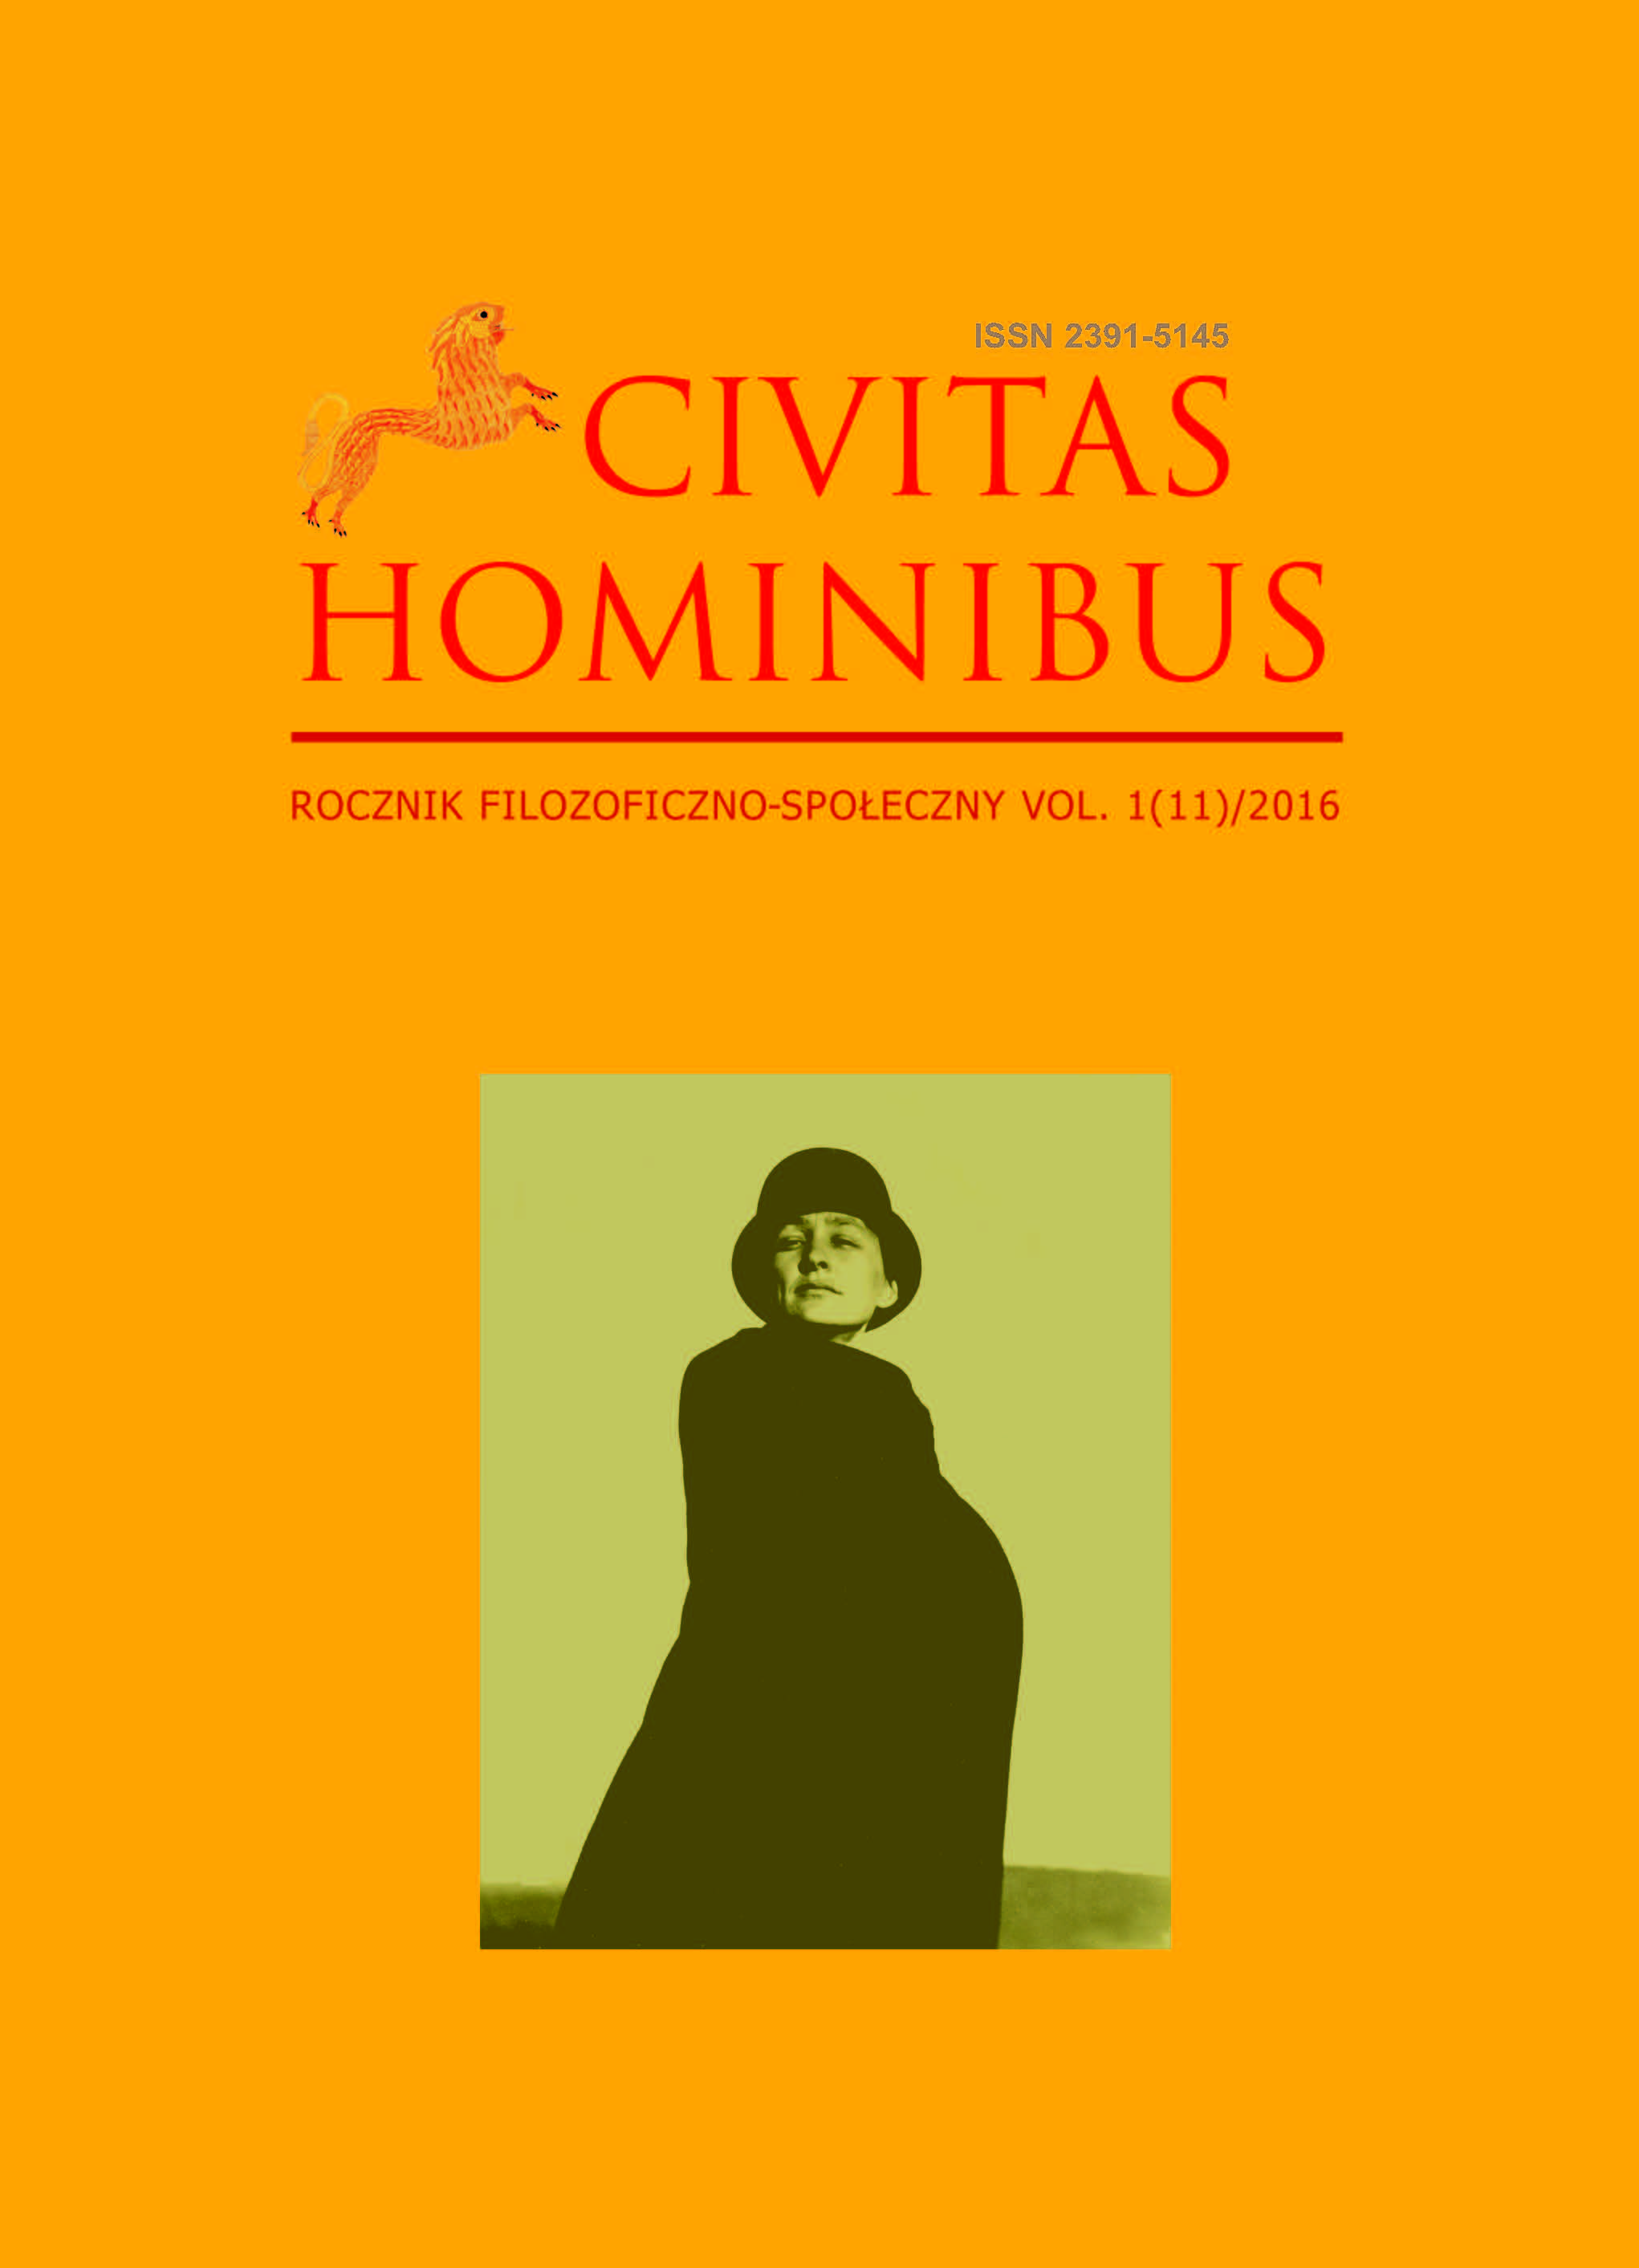 Civitas Hominibus XI